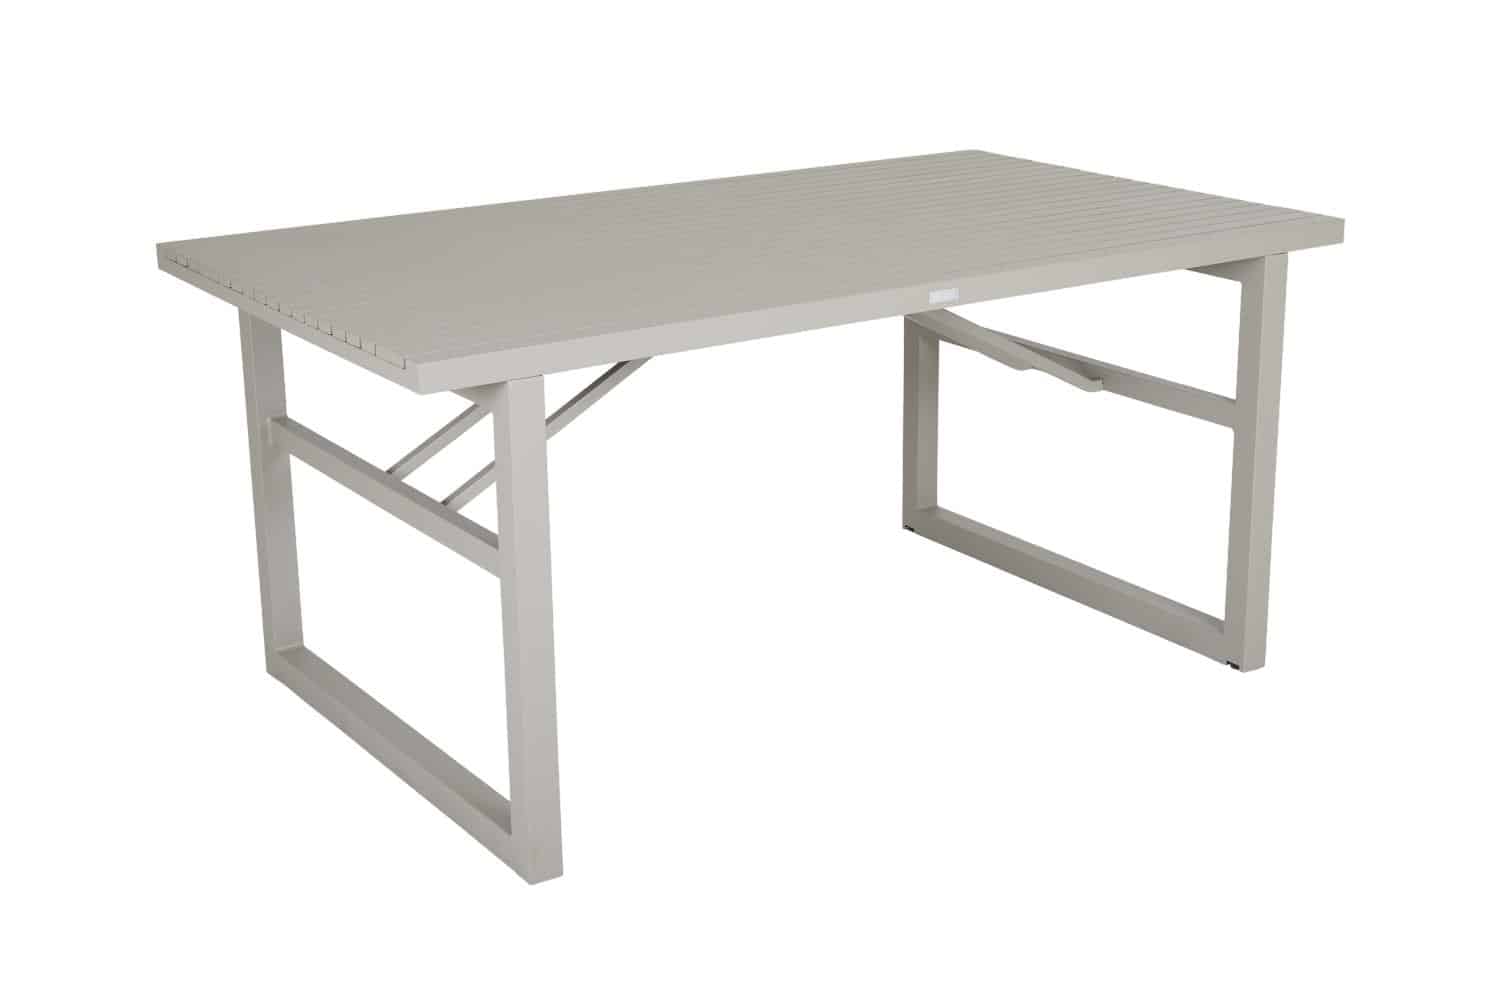 Brafab Vevi Matbord khaki är ett matbord 160×90 cm tillverkat i beige/khakifärgad underhållsfri aluminium.